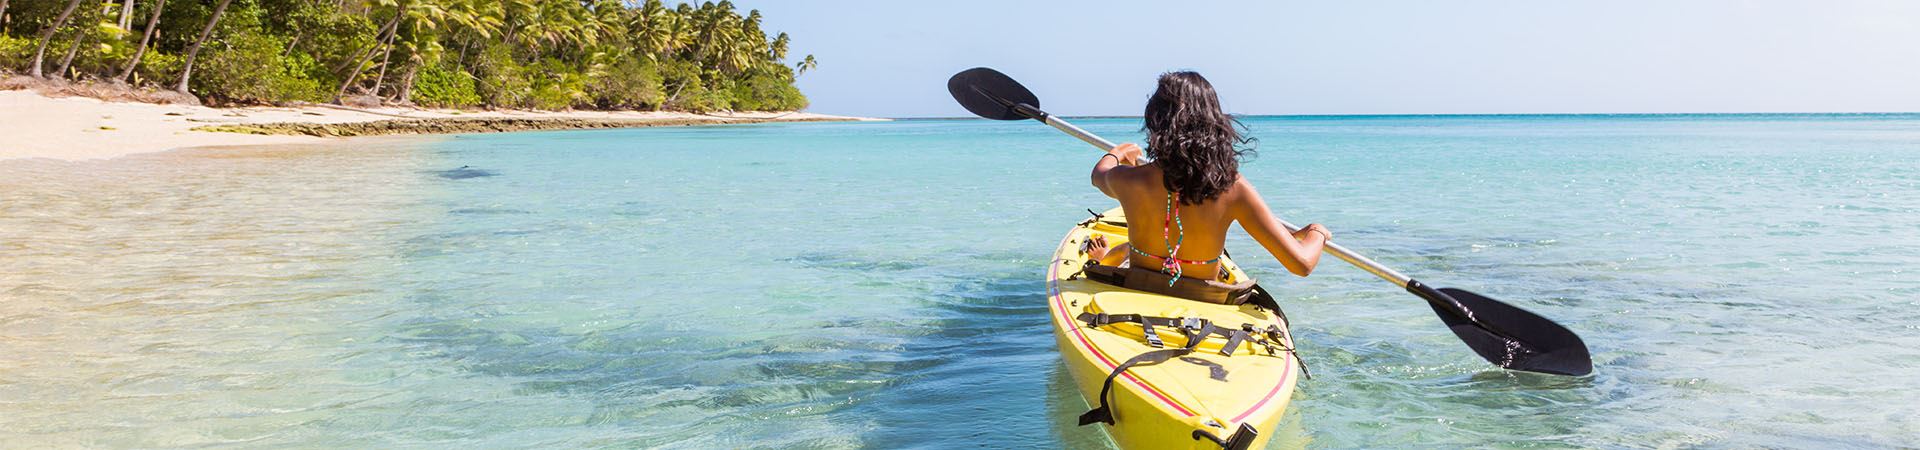 Cette image montre une fille de dos faisant du canoë dans la mer. Le canoë est jaune et en arrière-plan de l'image on voit du sable et un peu de végétation, ce qui indique qu'elle est proche de la plage.